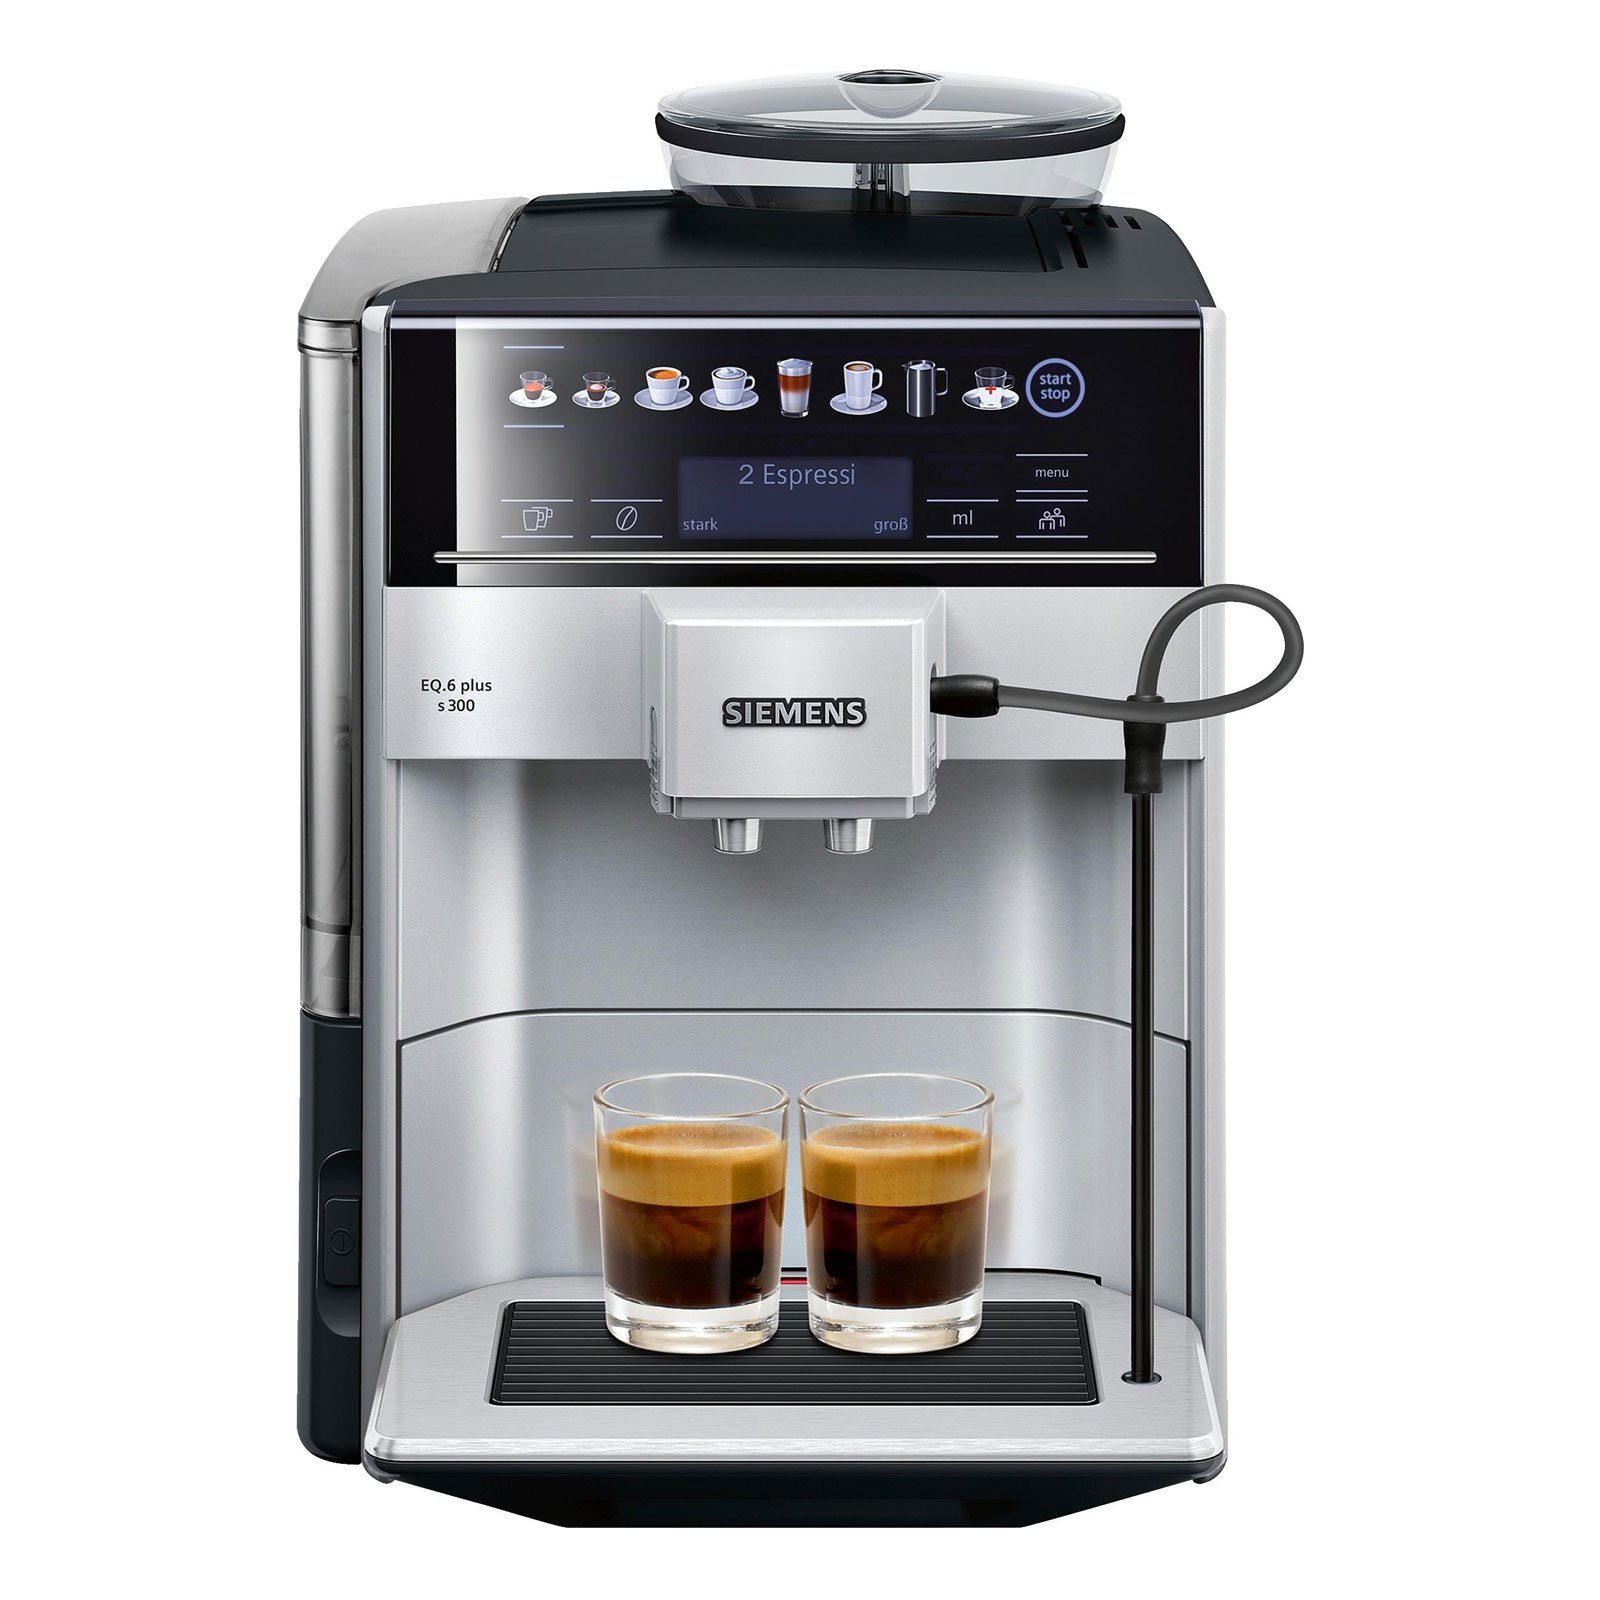 plus TE653501DE EQ.6 SIEMENS Kaffeevollautomat s300